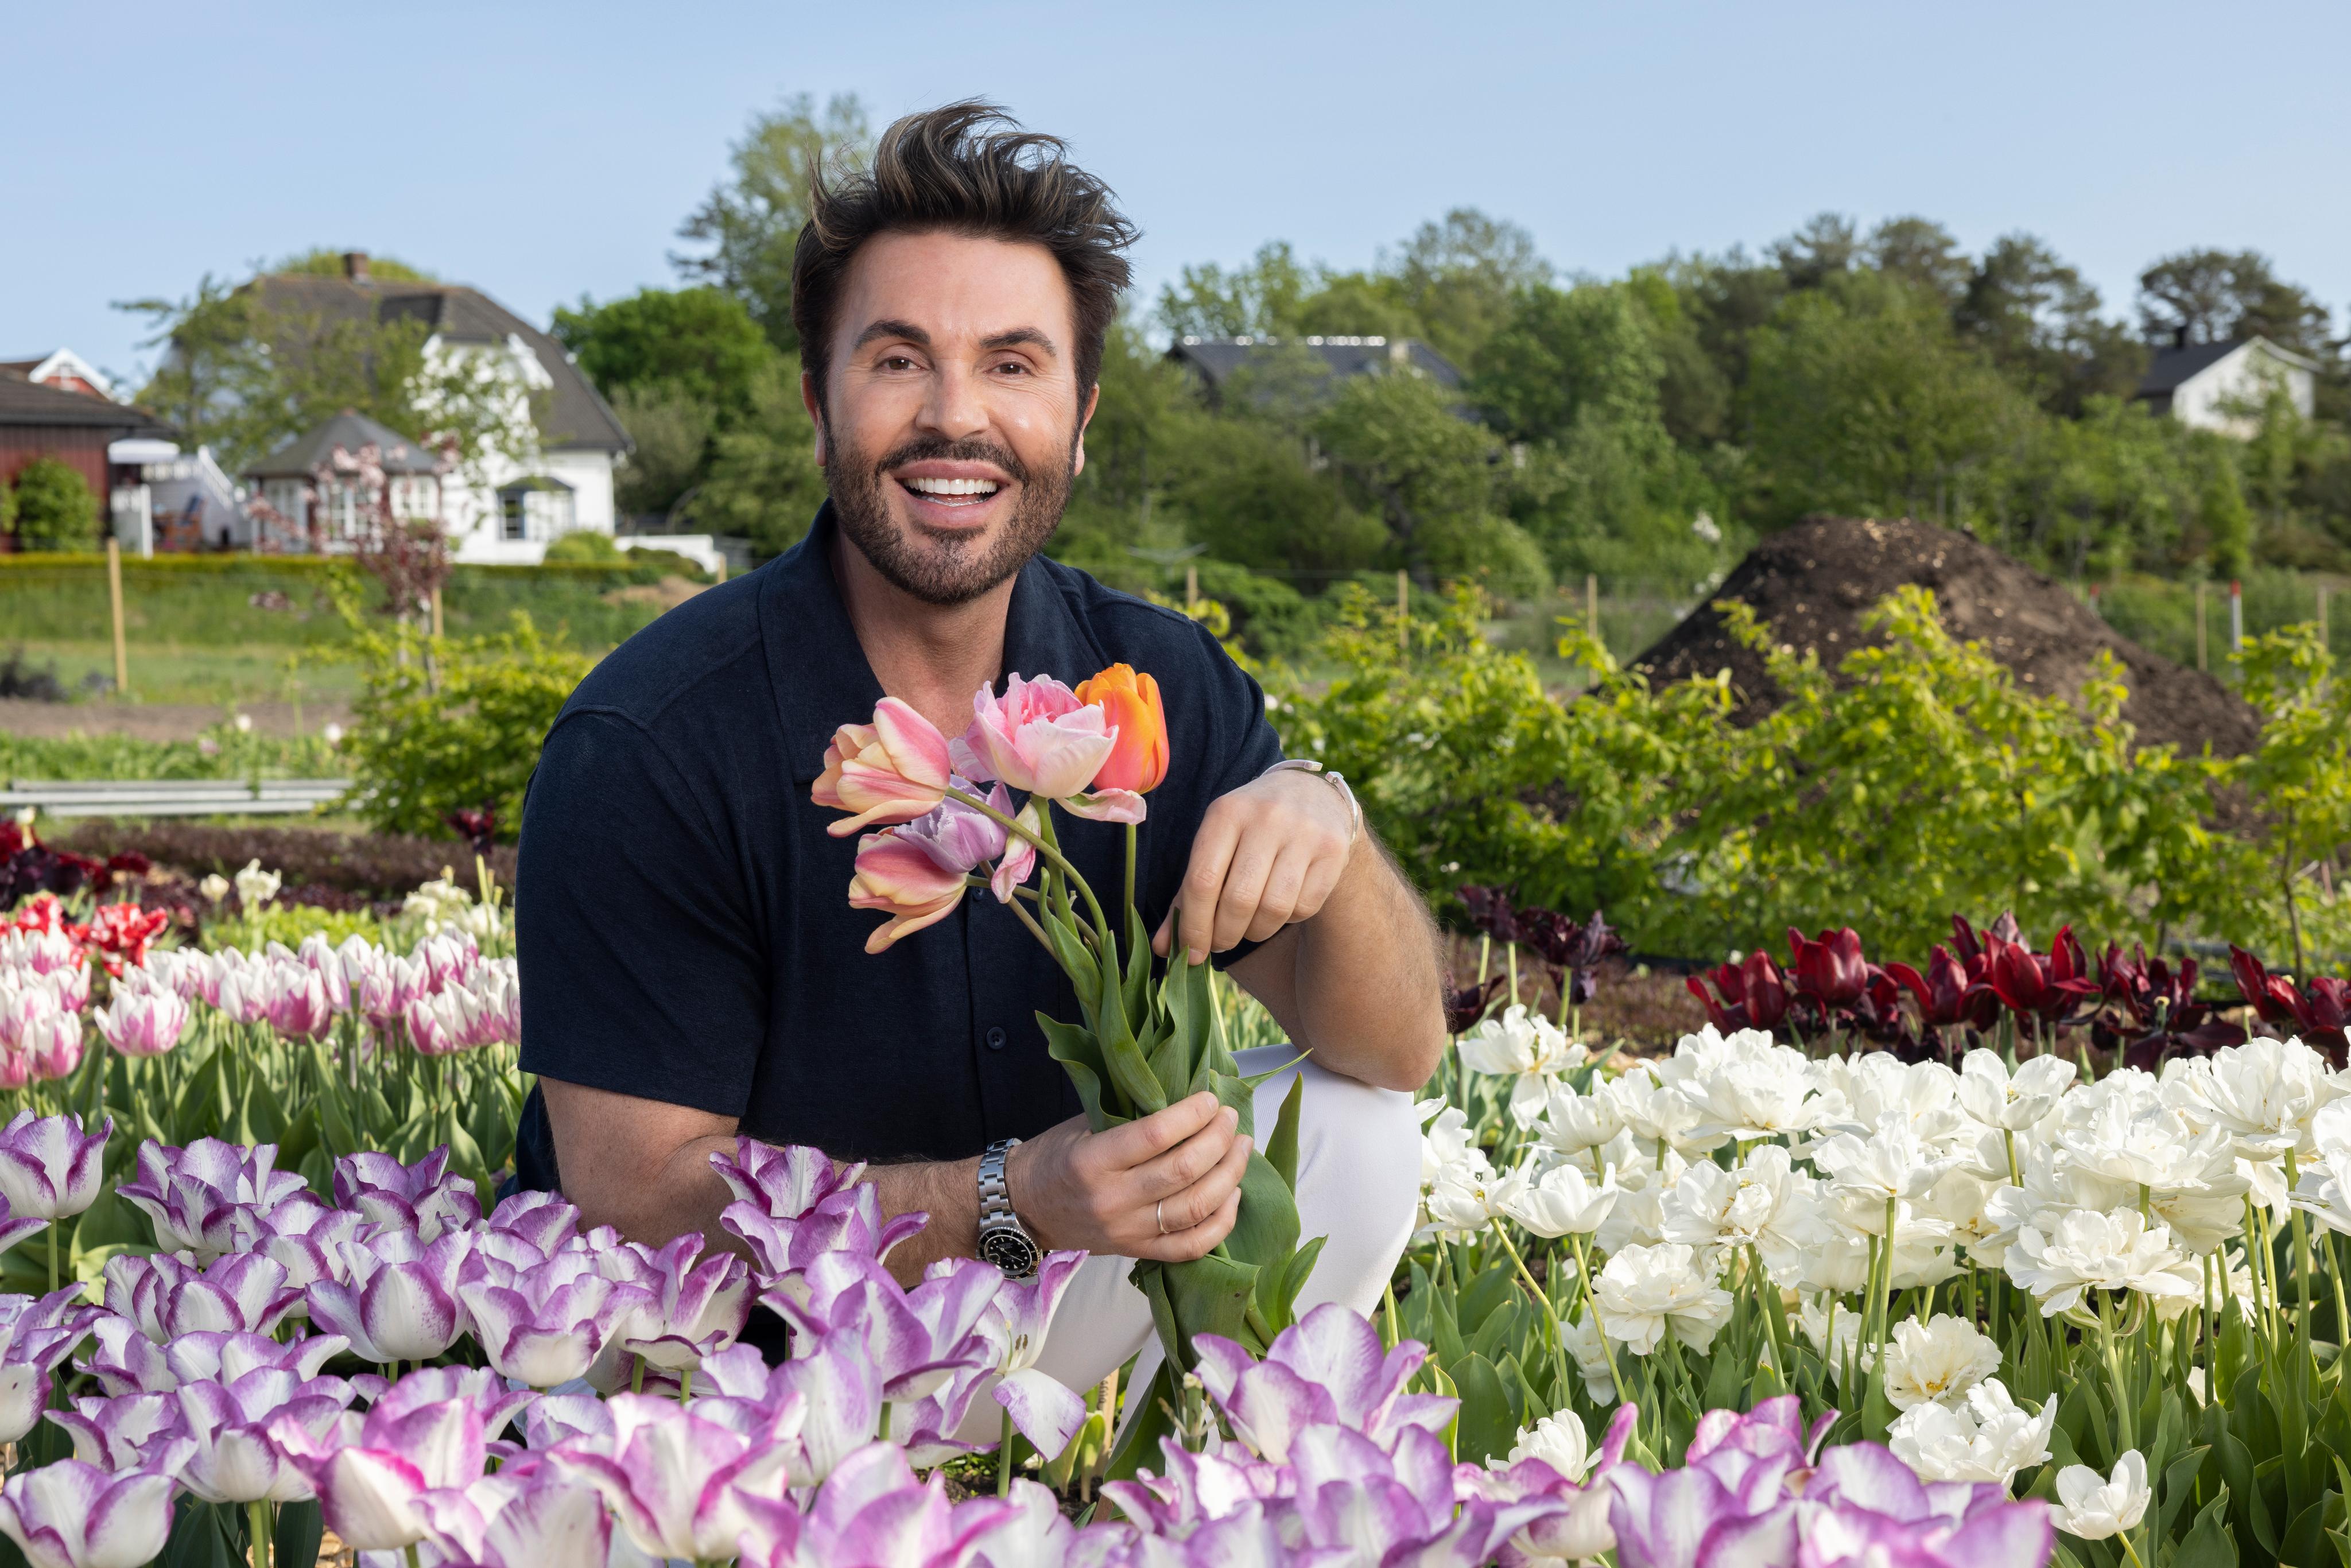 Bilde av programleder Jan Thomas, som sitter i en blomstereng og smiler